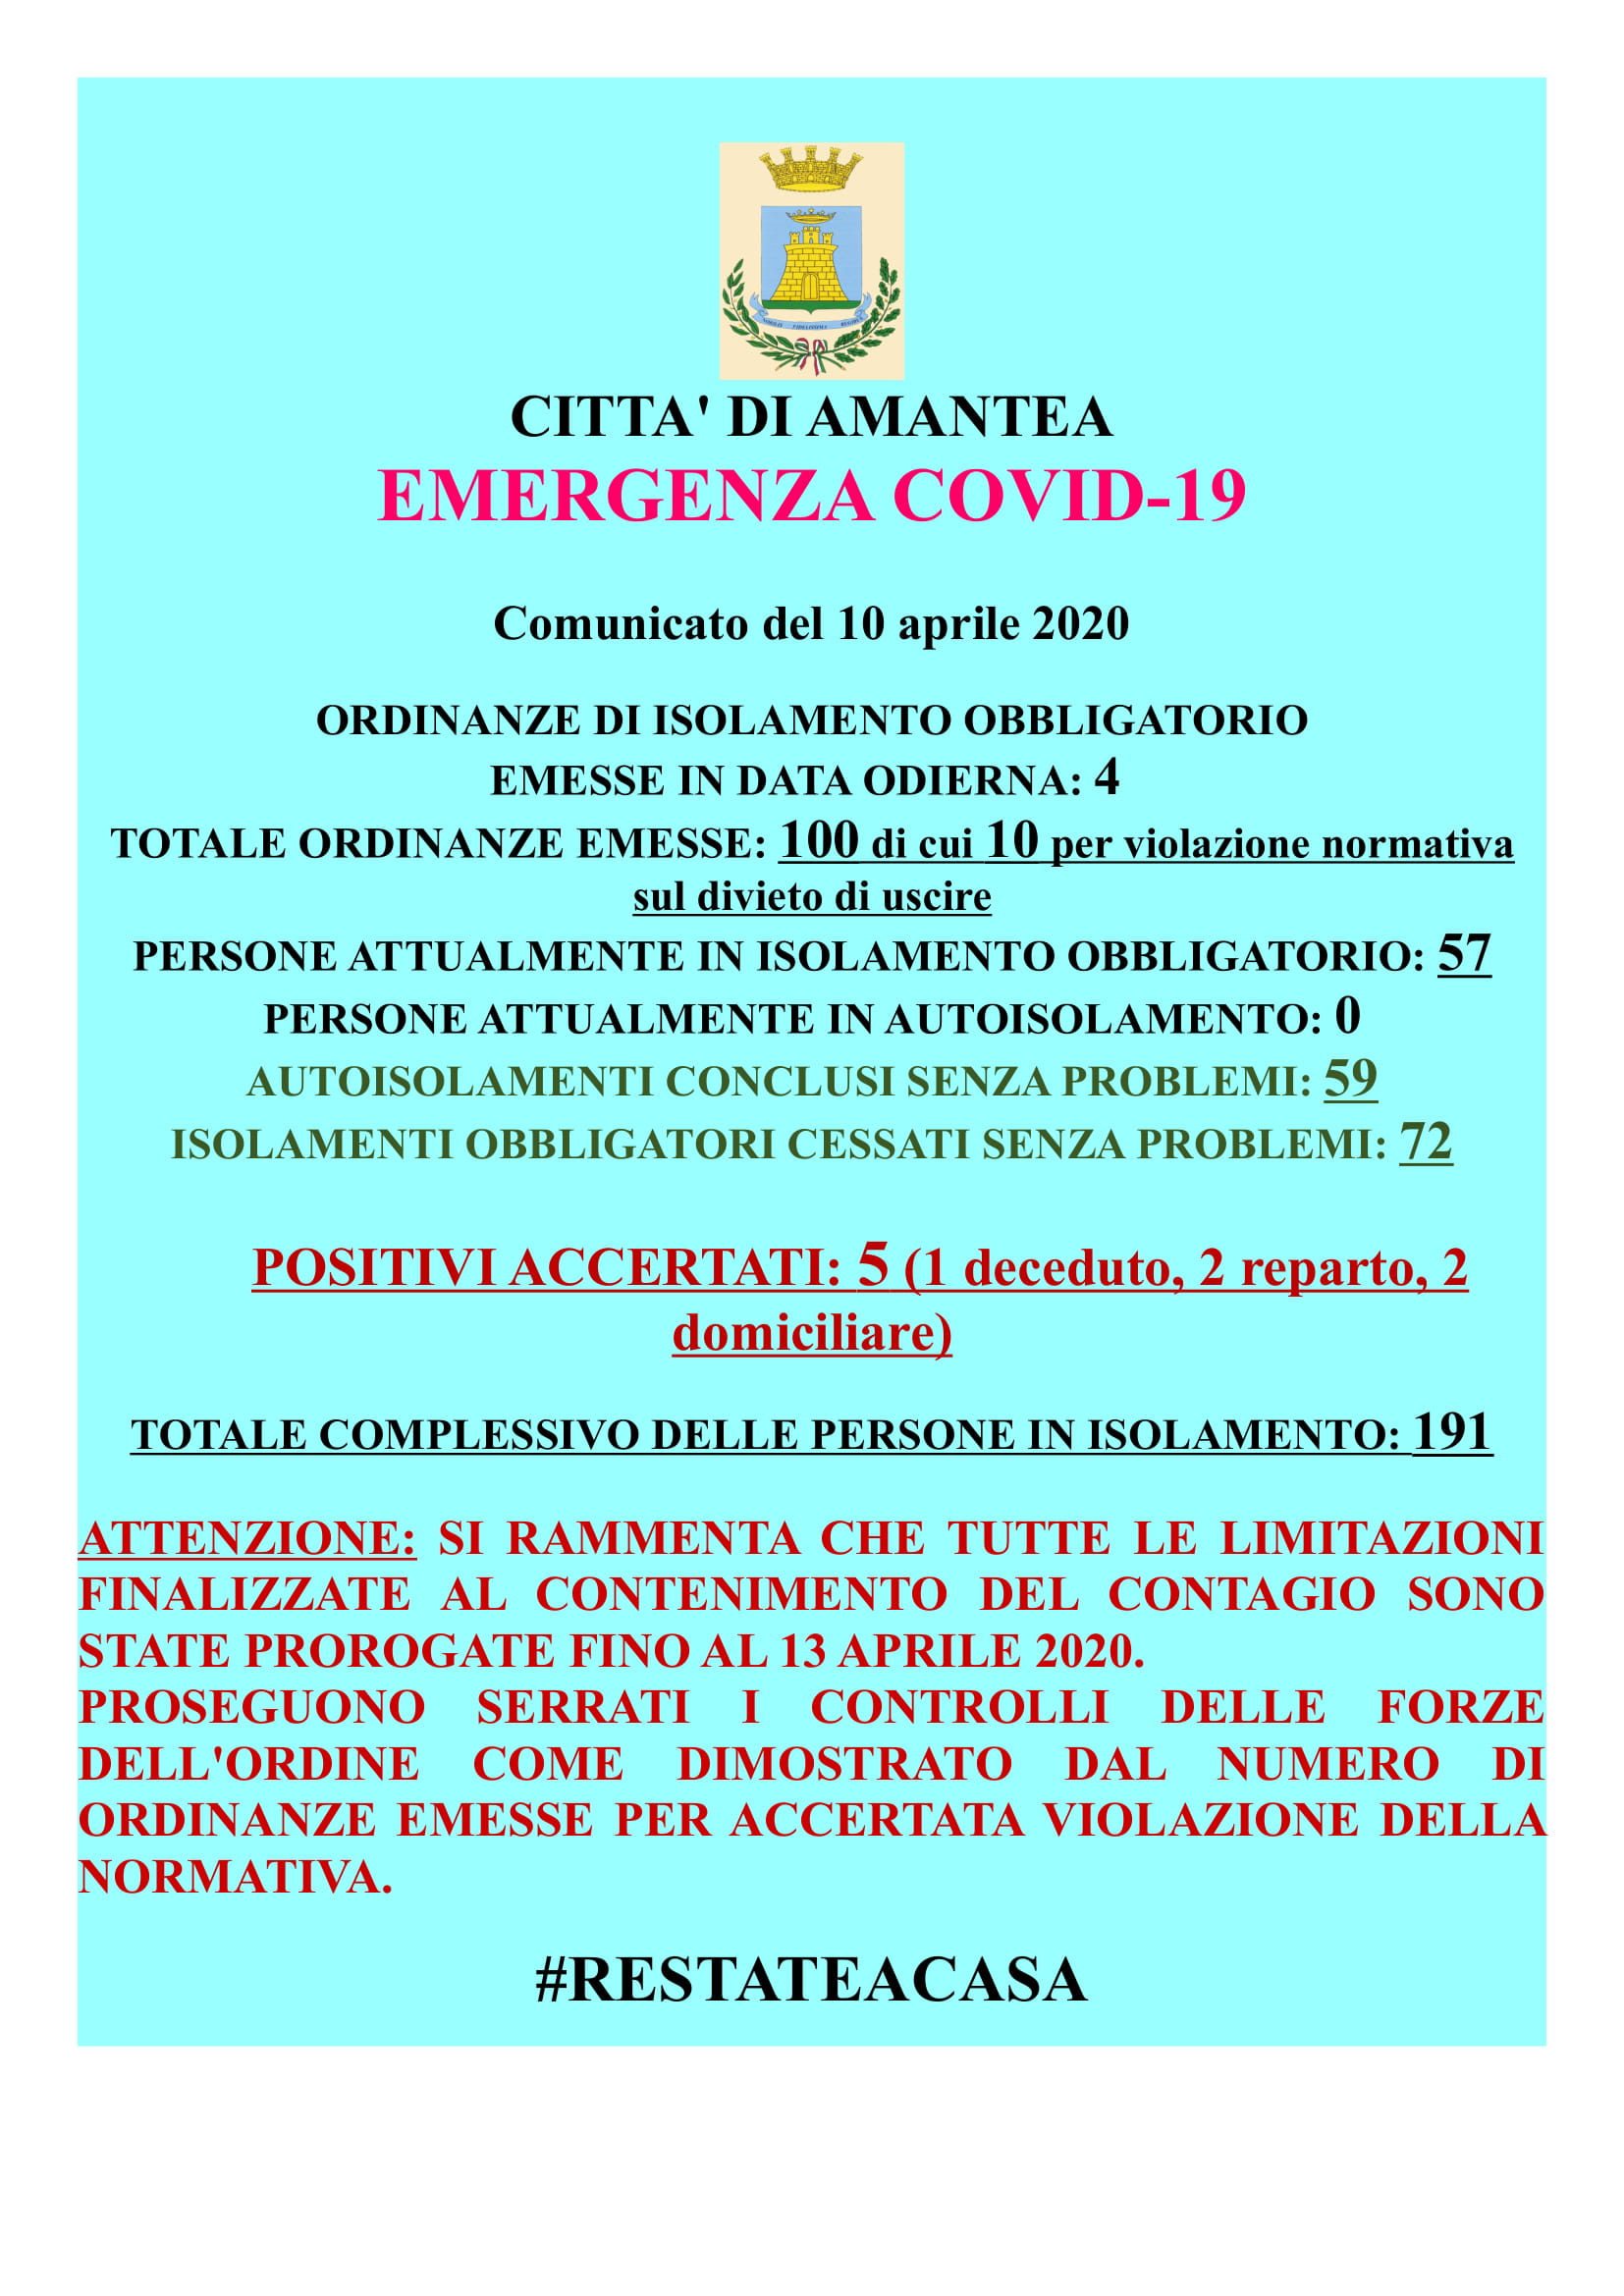 EMERGENZA COVID-19 Comunicato del 10 Aprile 2020